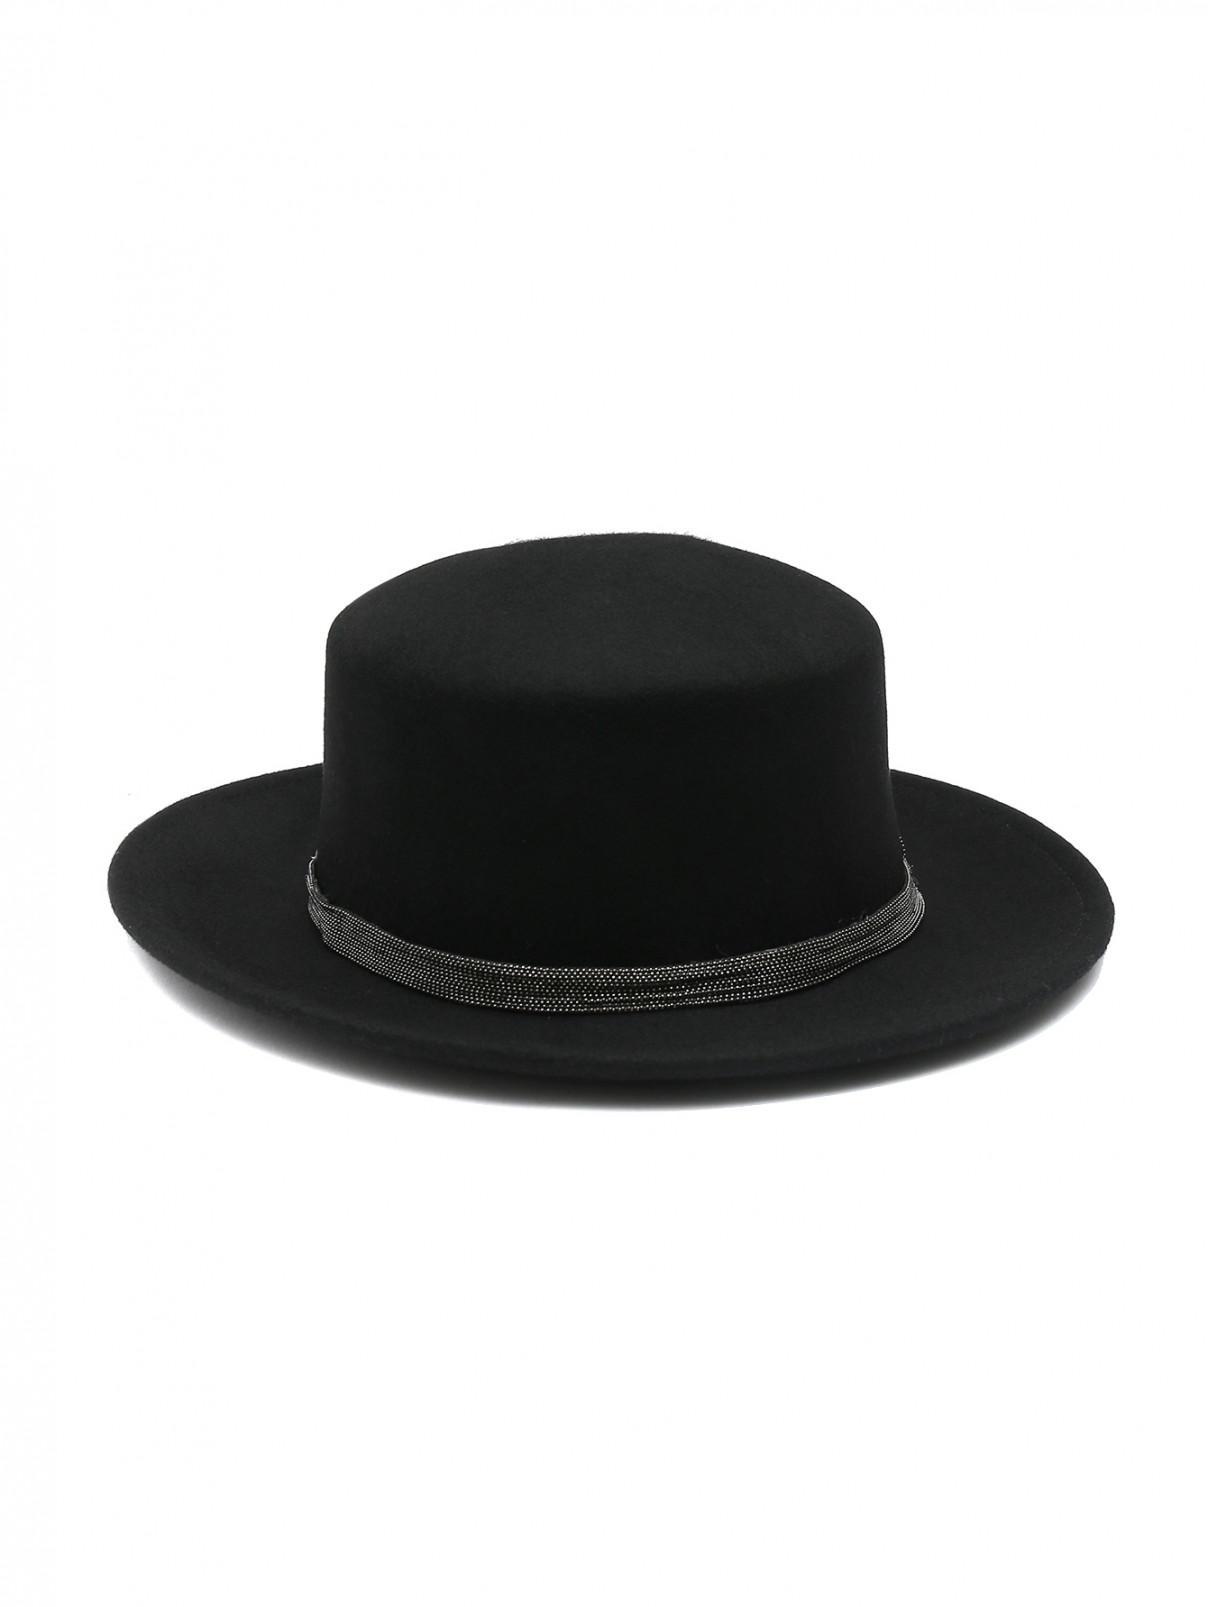 Шляпа из шерсти декорированная тесьмой Suncoo  –  Общий вид  – Цвет:  Черный